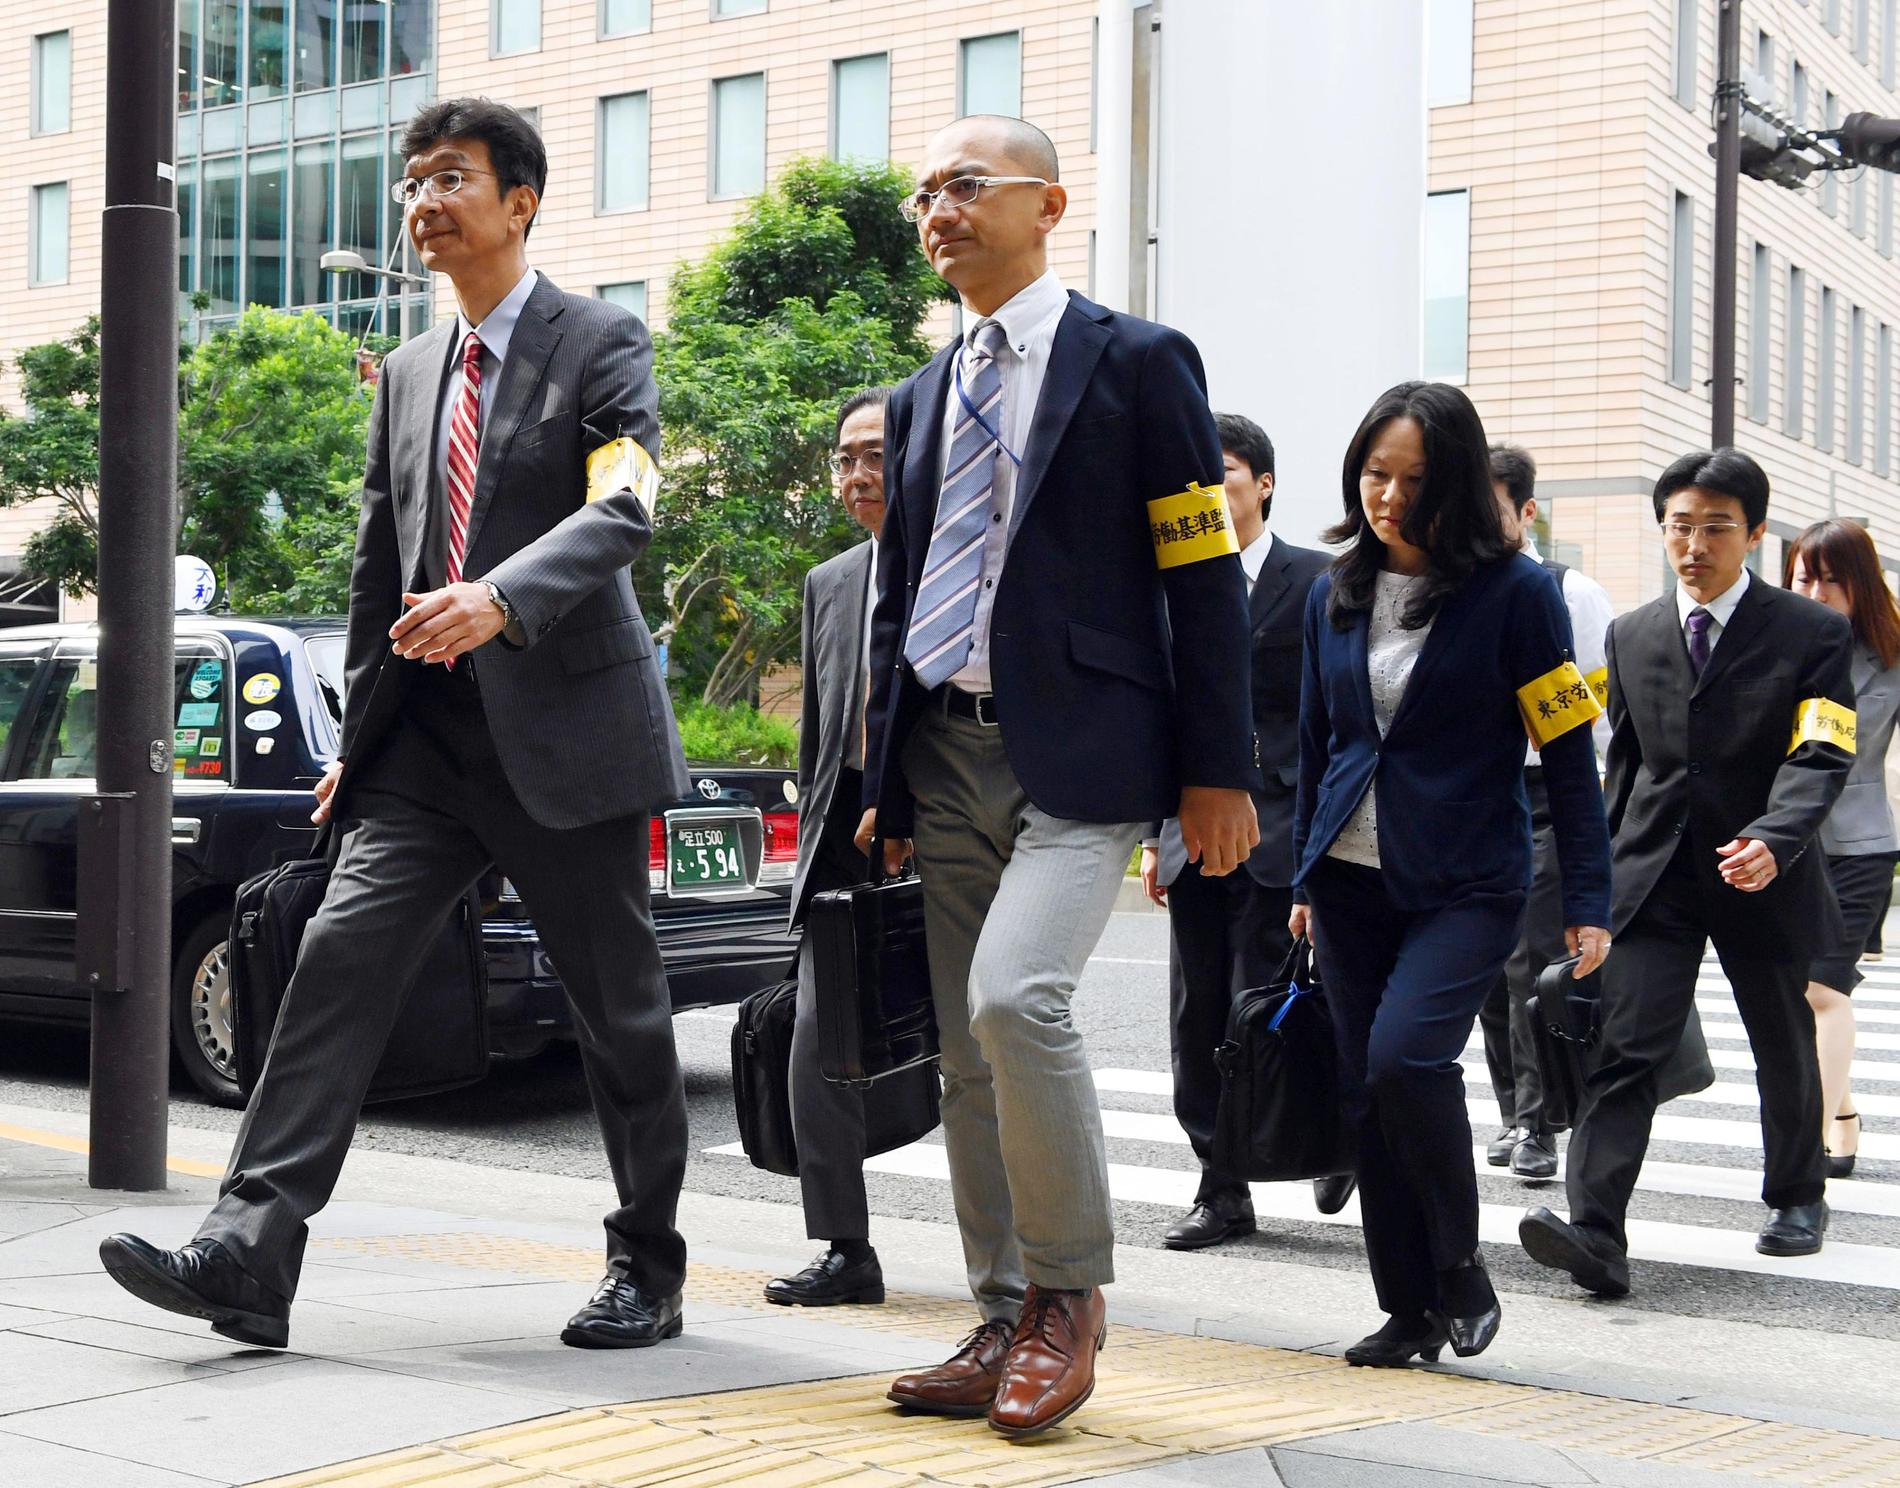 Inspektörer på väg in på en reklambyrå i Tokyo efter ett uppmärksammat självmord 2016. Det fallet, liksom många andra i Japan, ansågs bero på att folk pressas för hårt i arbetslivet.